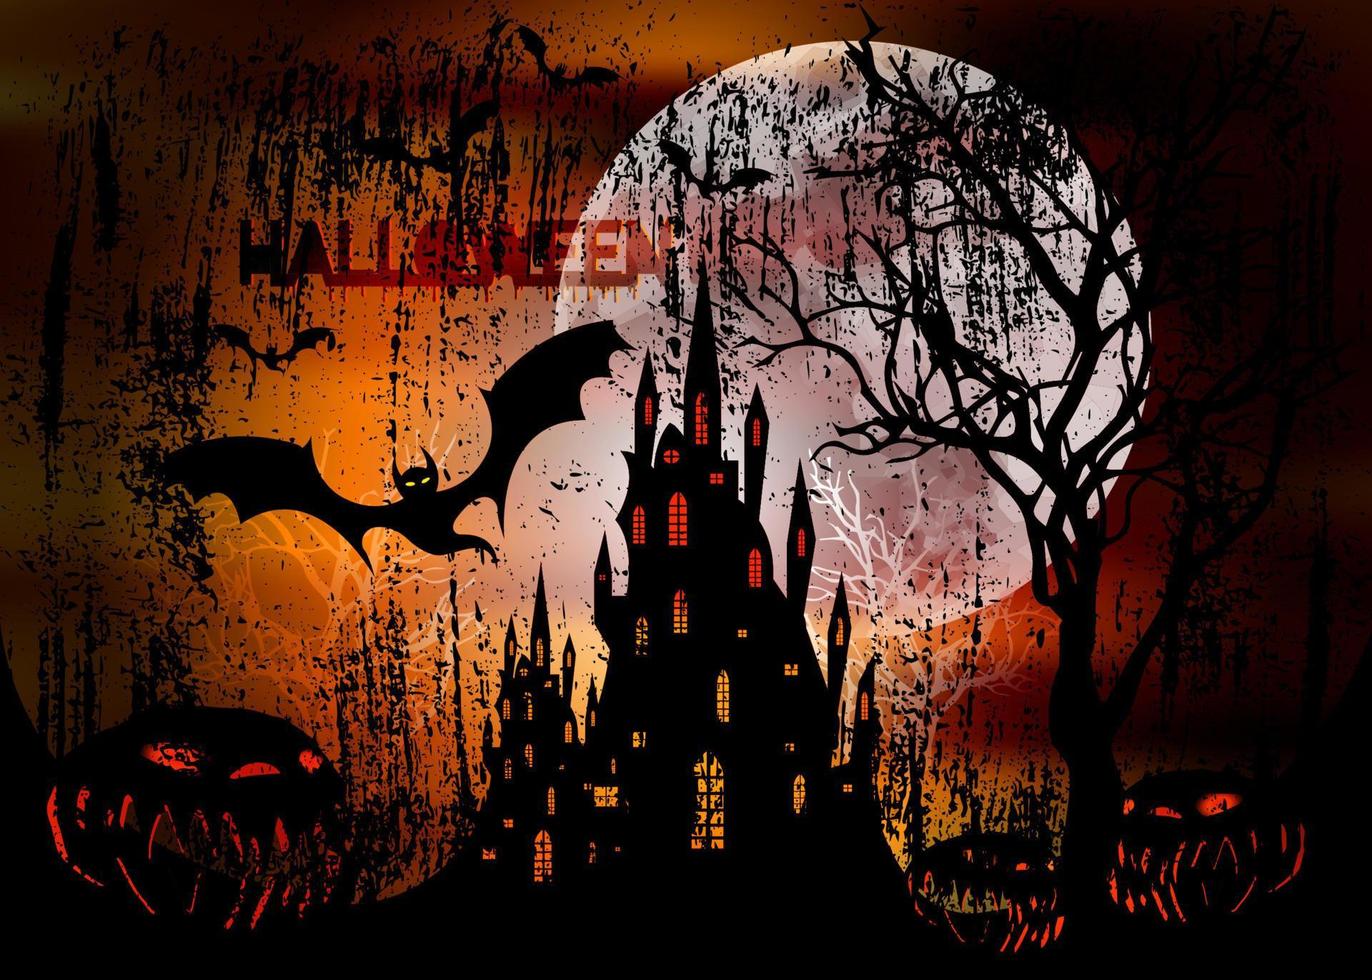 fiesta de halloween, ilustración vectorial mística, fondo naranja oscuro en una luna llena espeluznante con siluetas de personajes y murciélagos aterradores con castillo embrujado gótico, concepto de tema de terror vector